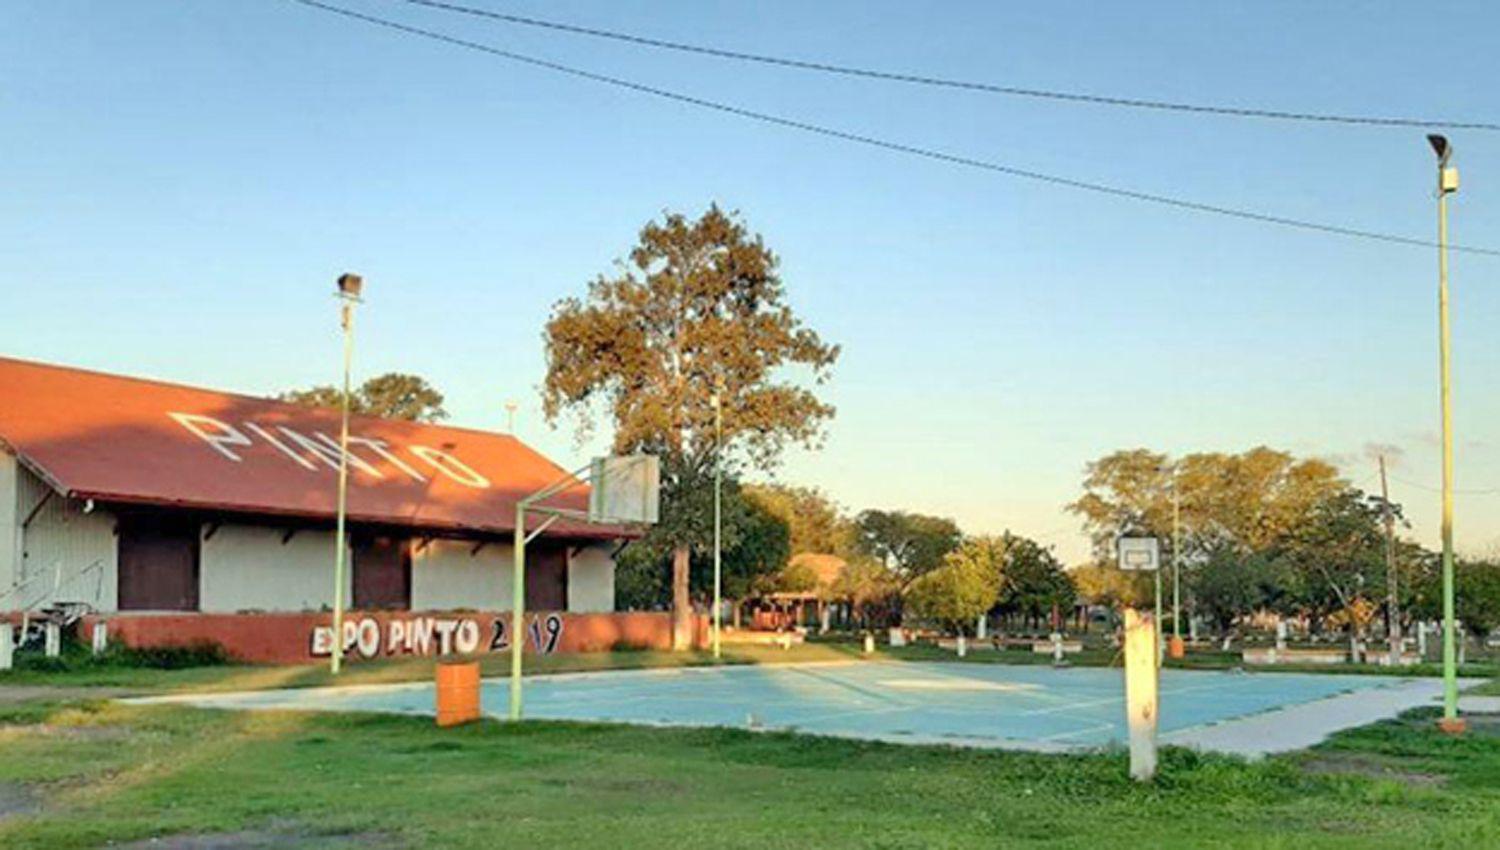 La comuna de Pinto asegura servicios baacutesicos para los vecinos